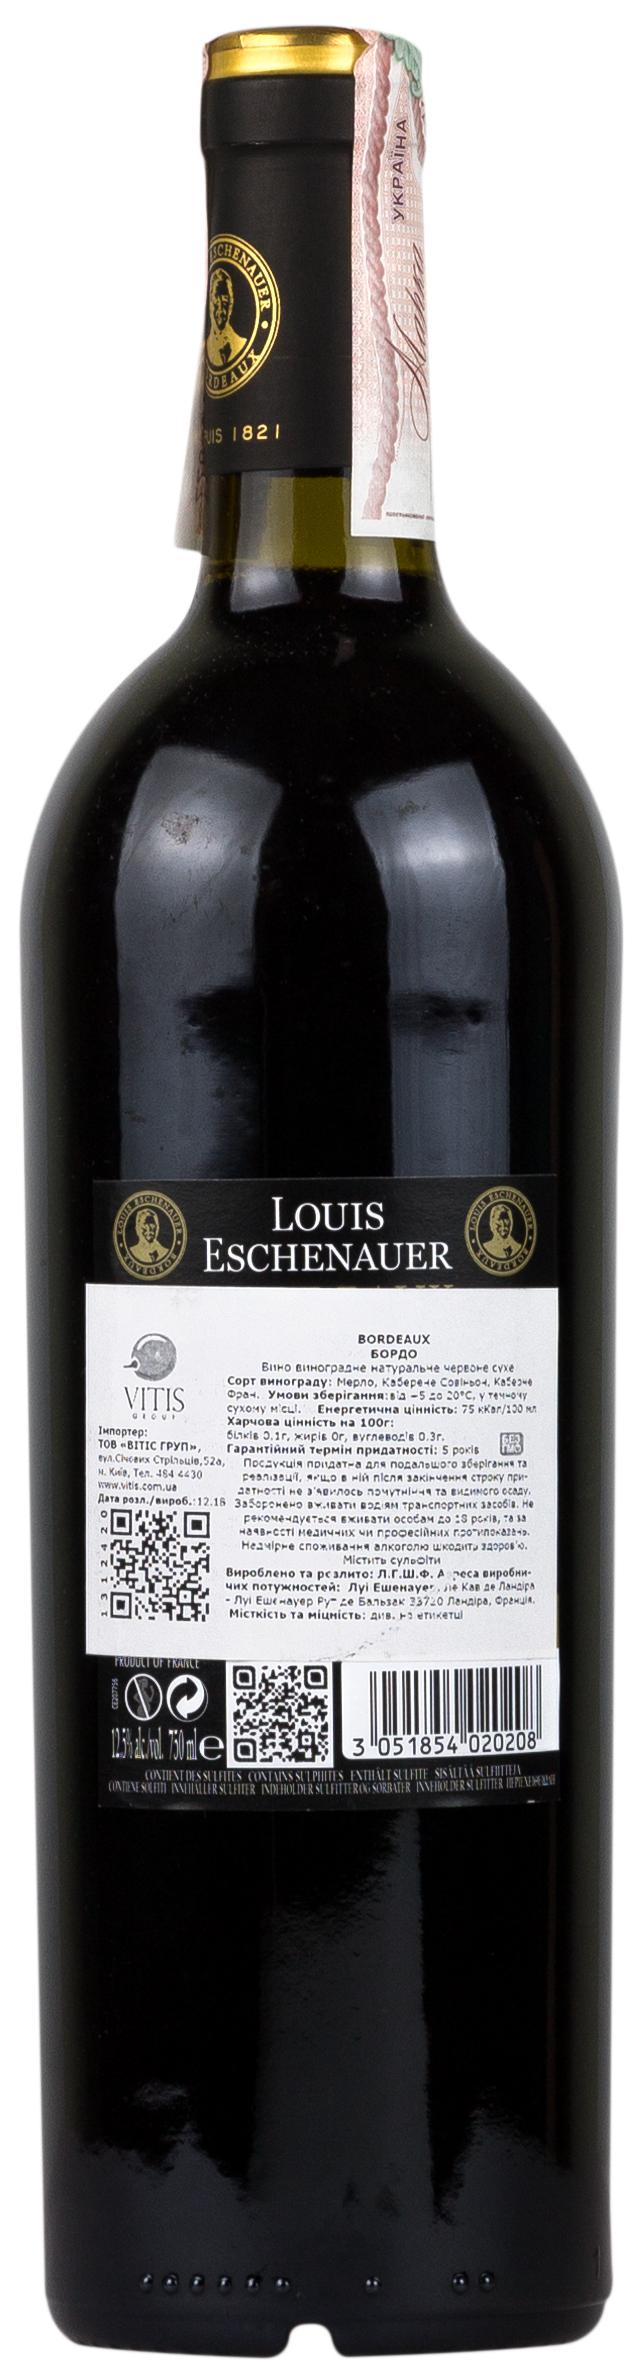 Louis Eschenauer Bordeaux Merlot-Cabernet 2017 Set 6 Bottles - 2